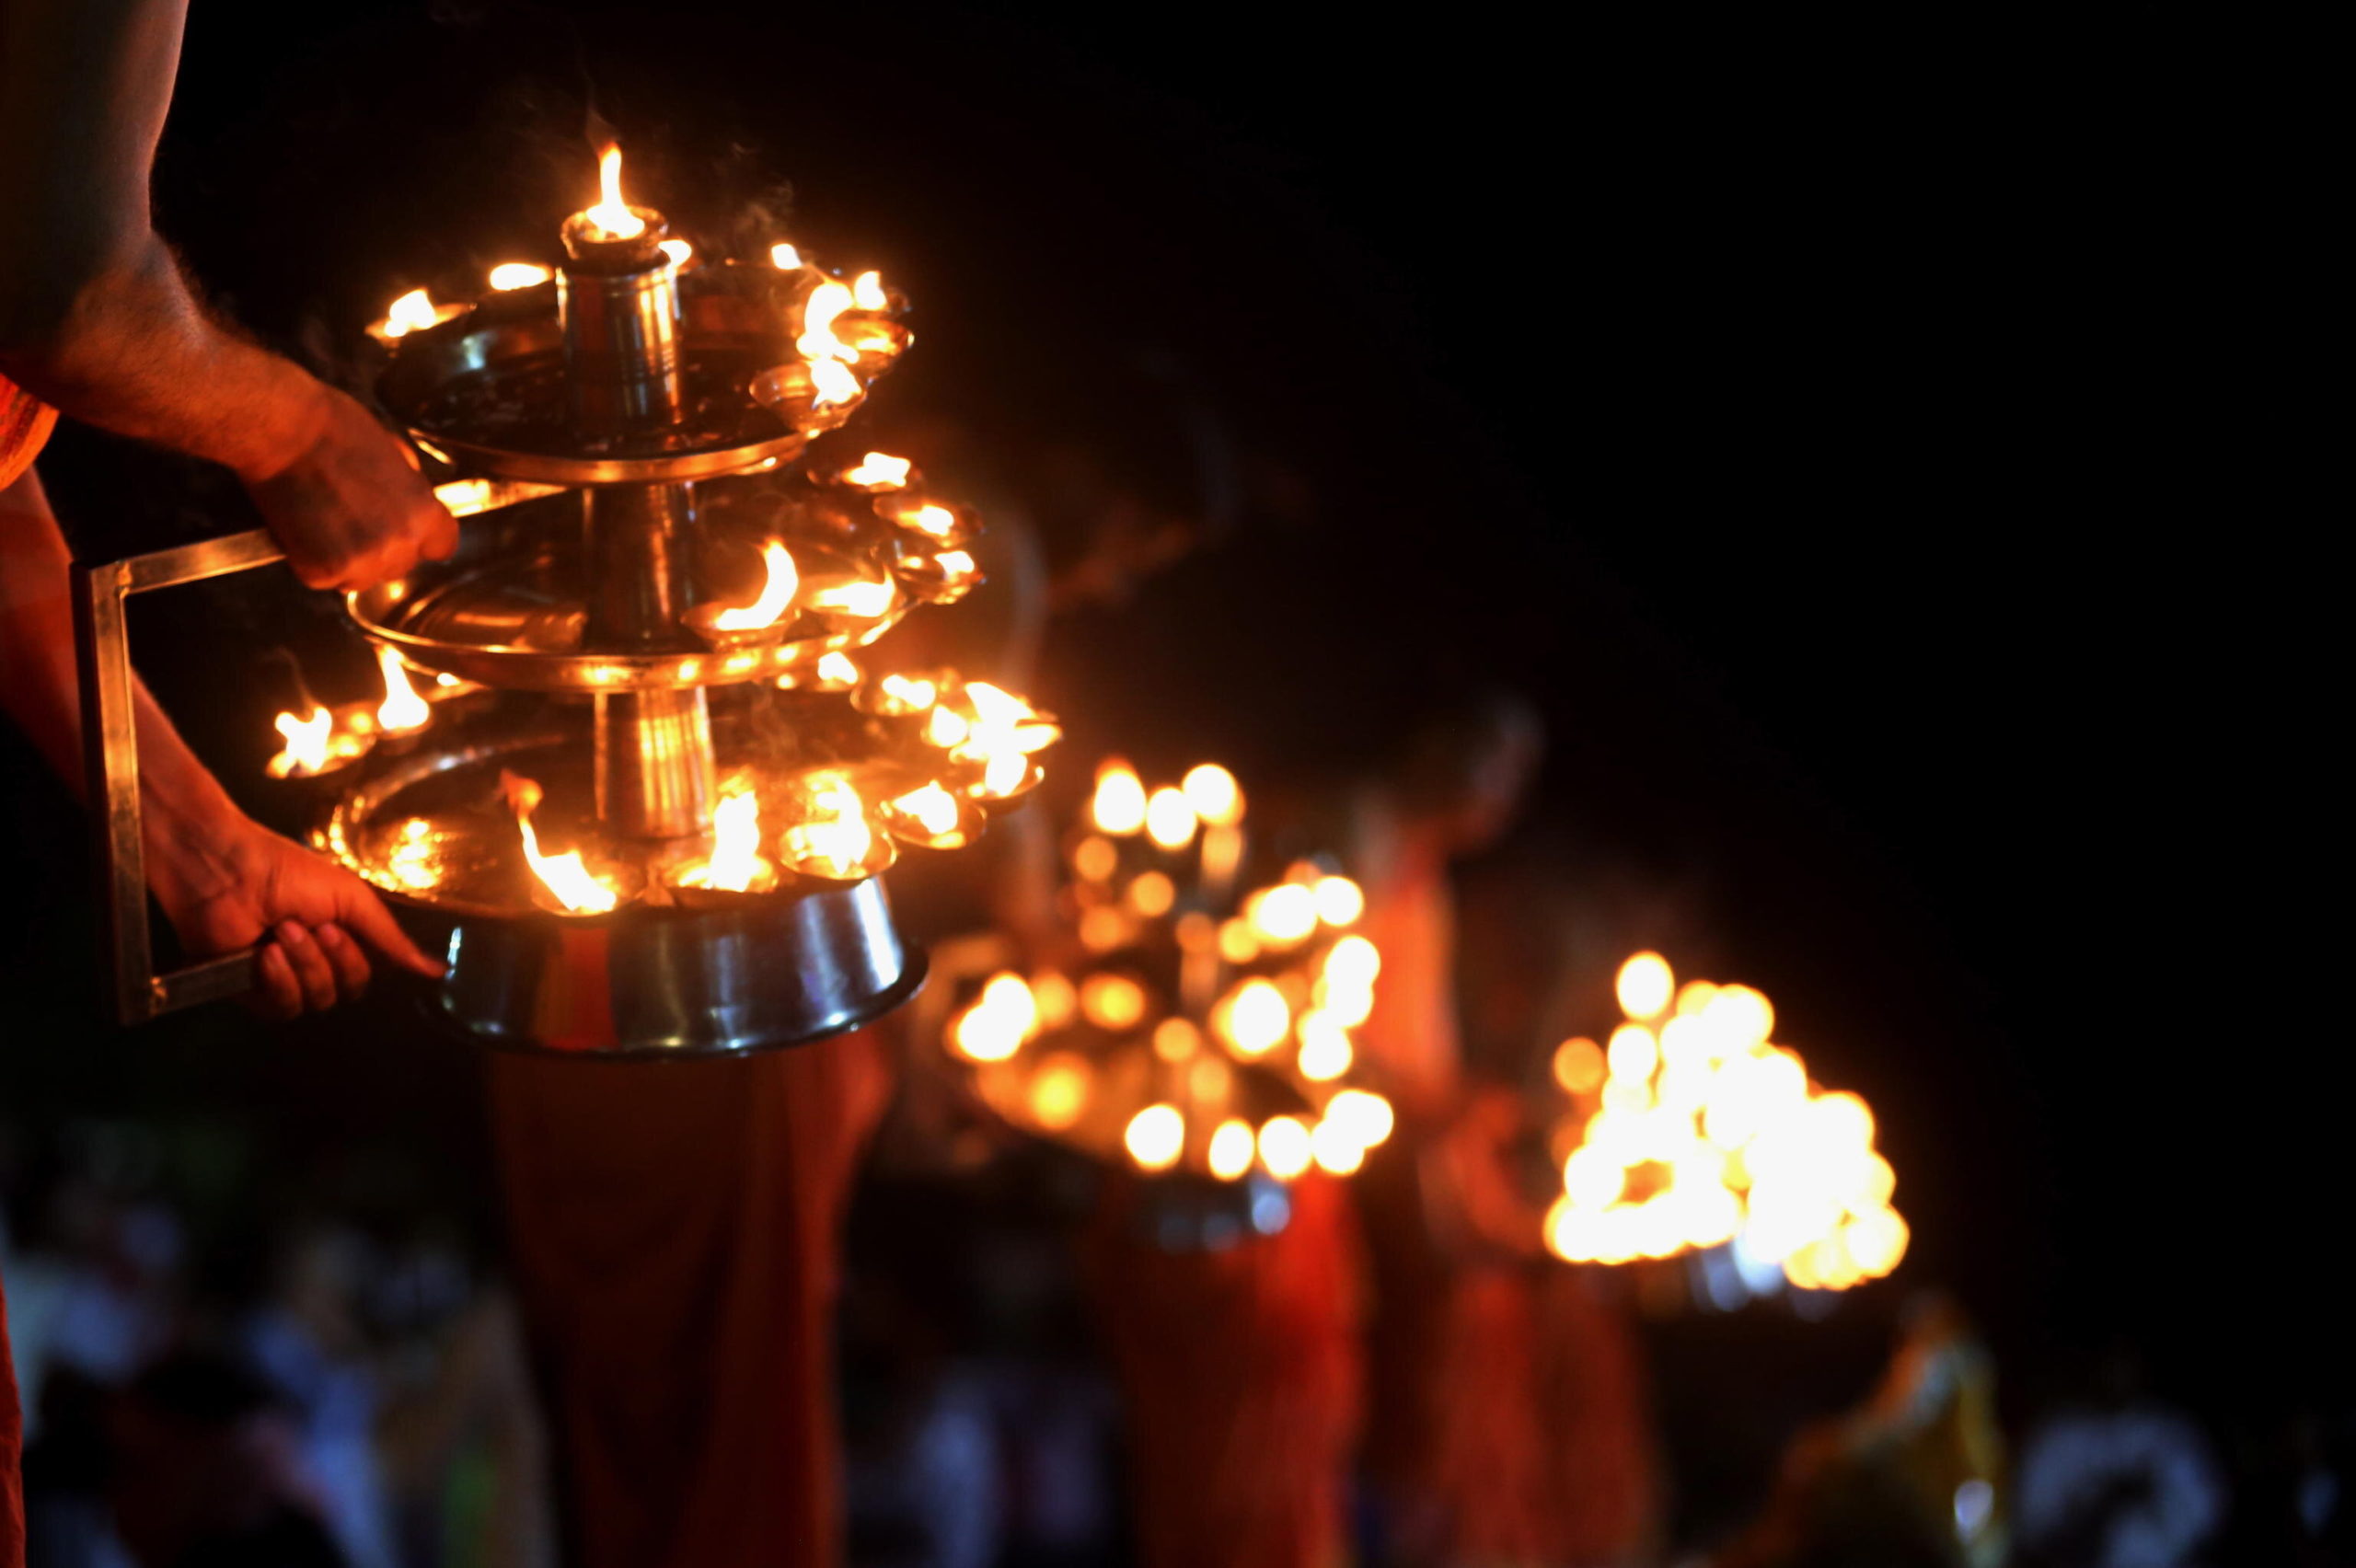 L'atmosfera della celebrazione assume una sacralità affascinante con decine di fiammelle